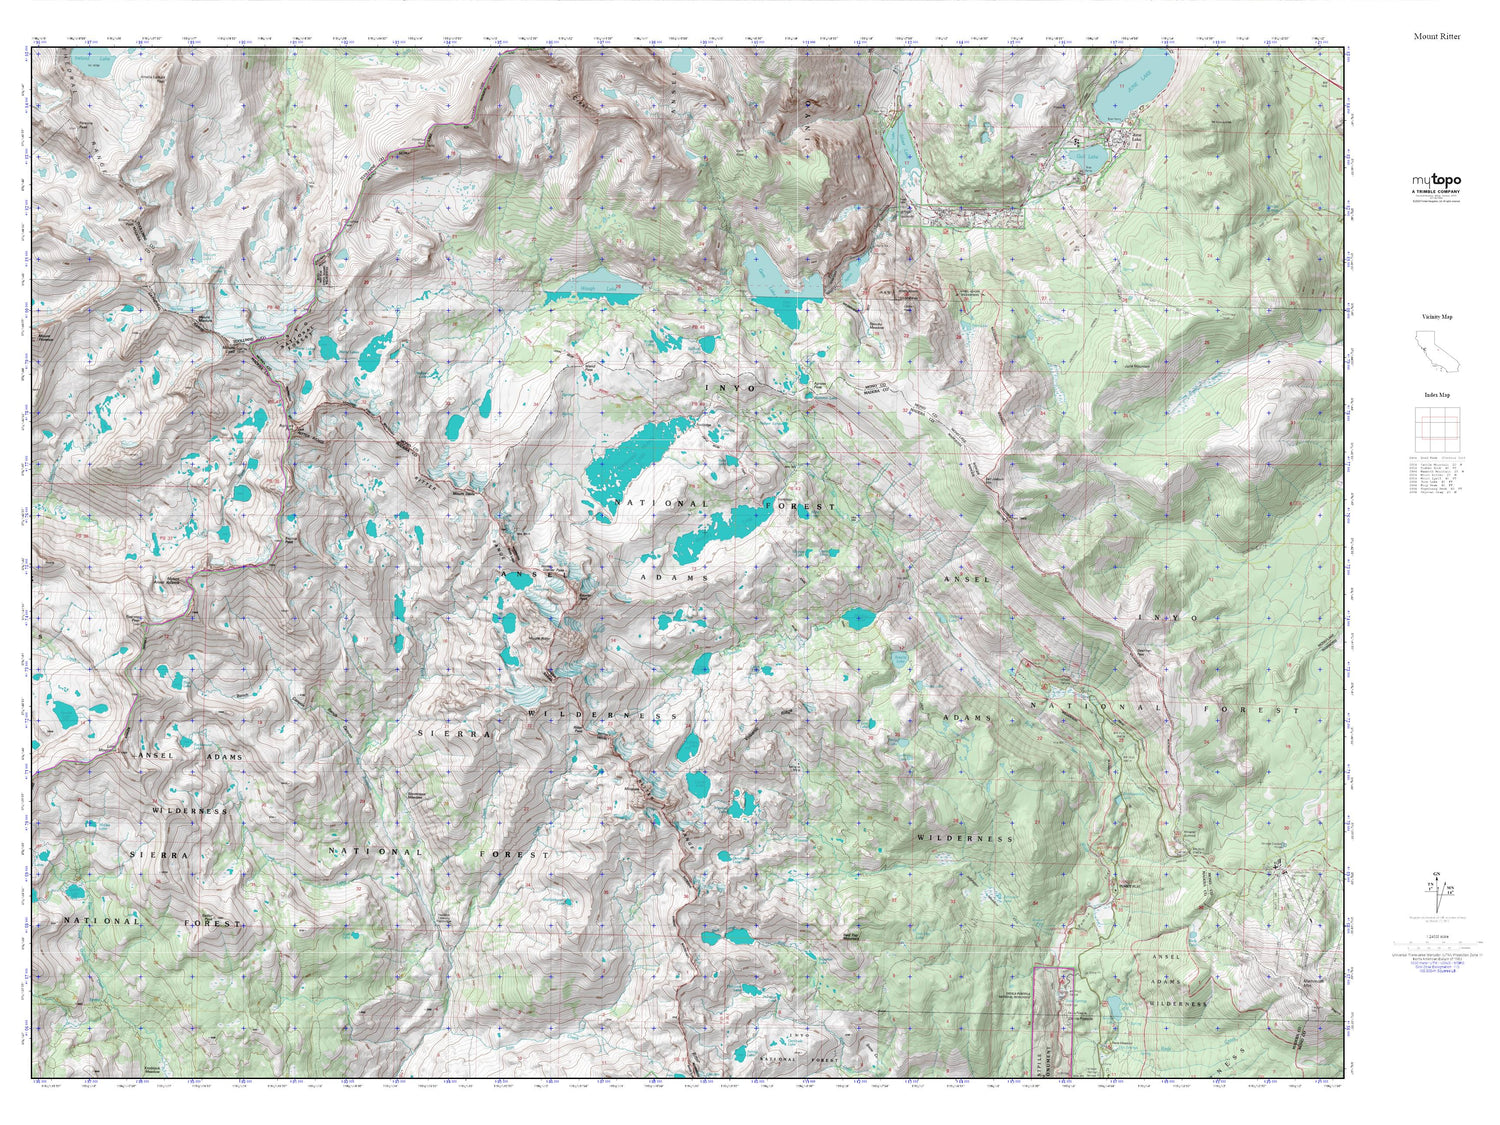 Mount Ritter MyTopo Explorer Series Map Image